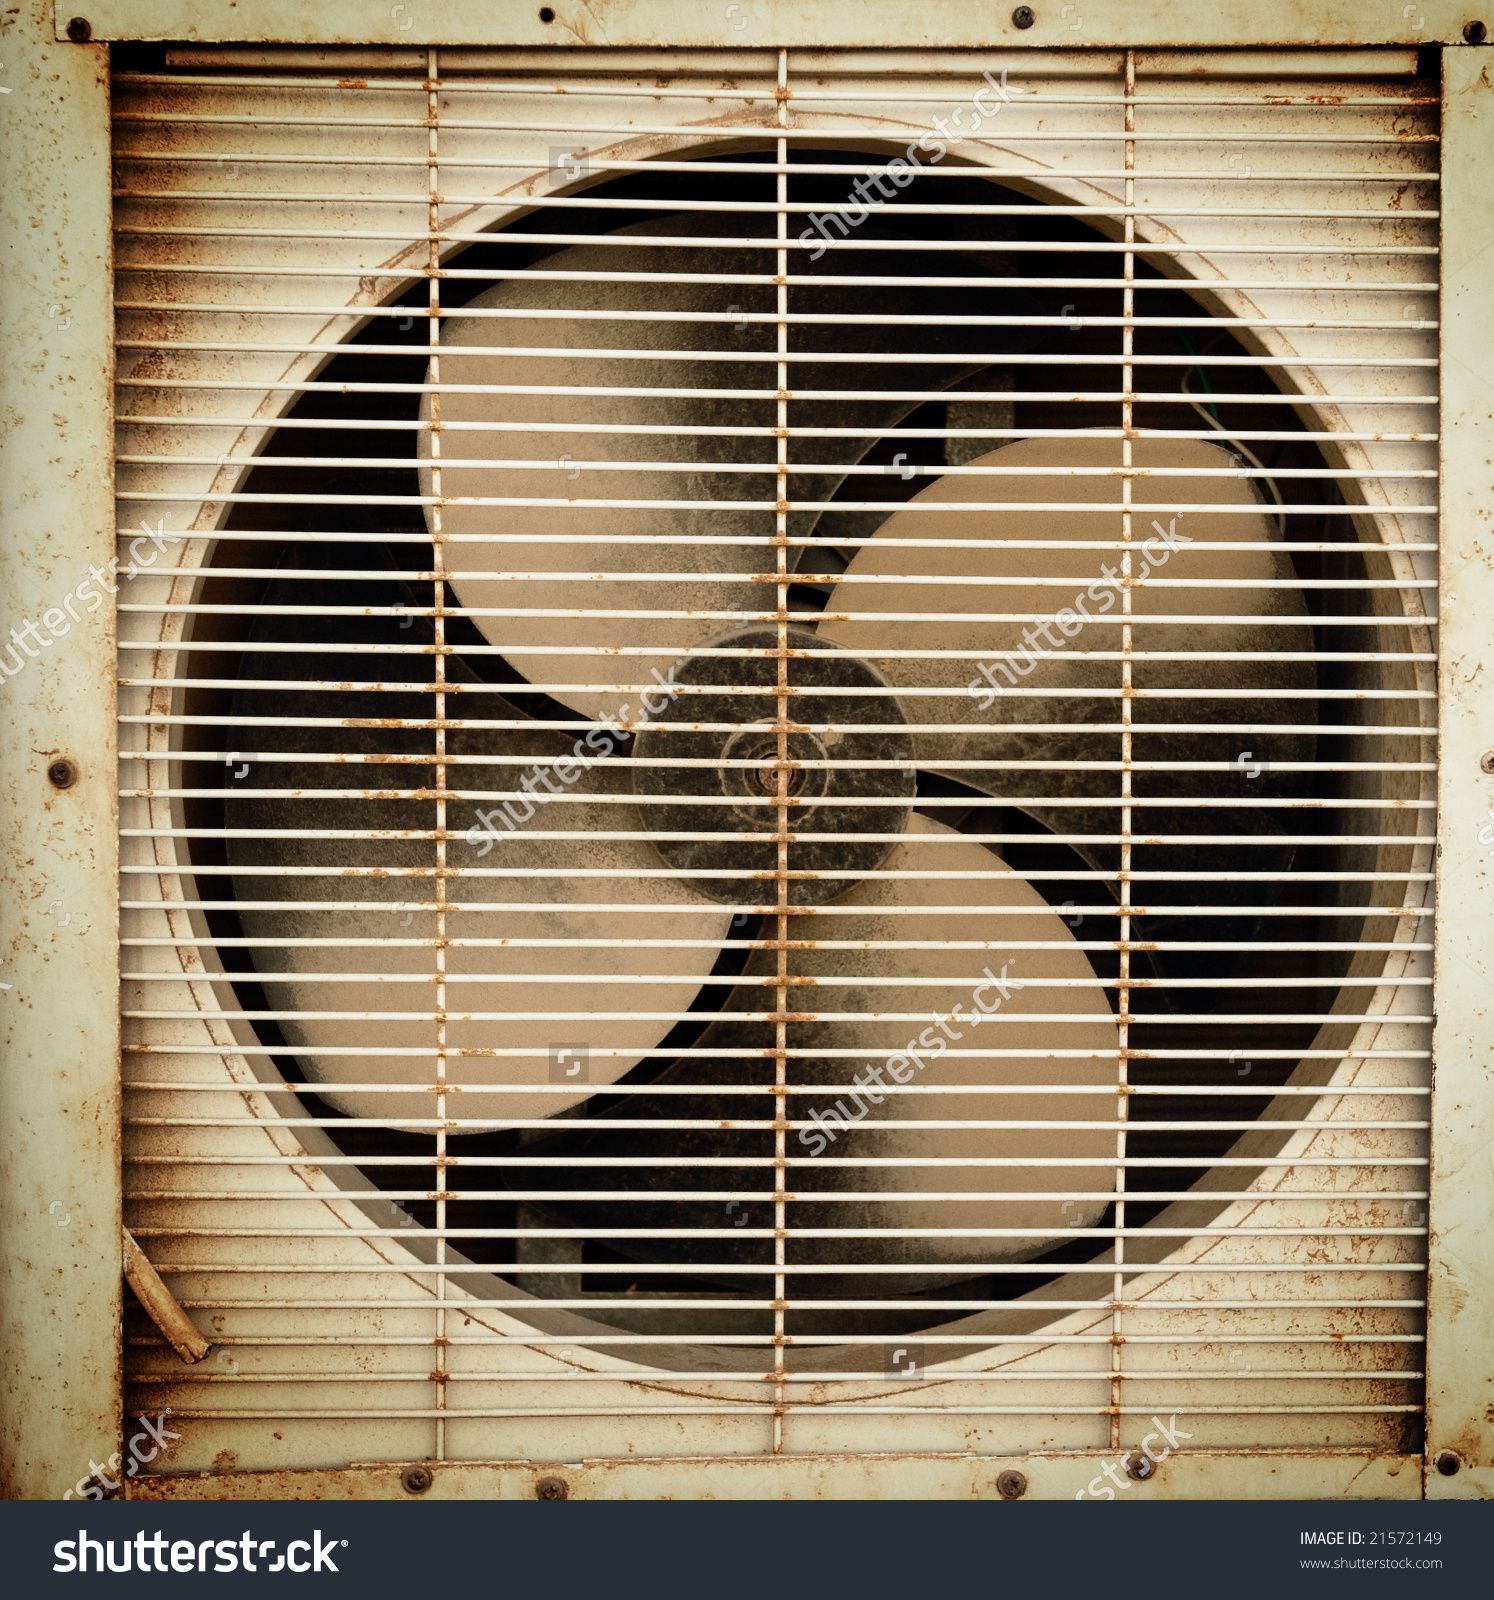 Image result for old ventilation fan | Christmas Eve | Pinterest